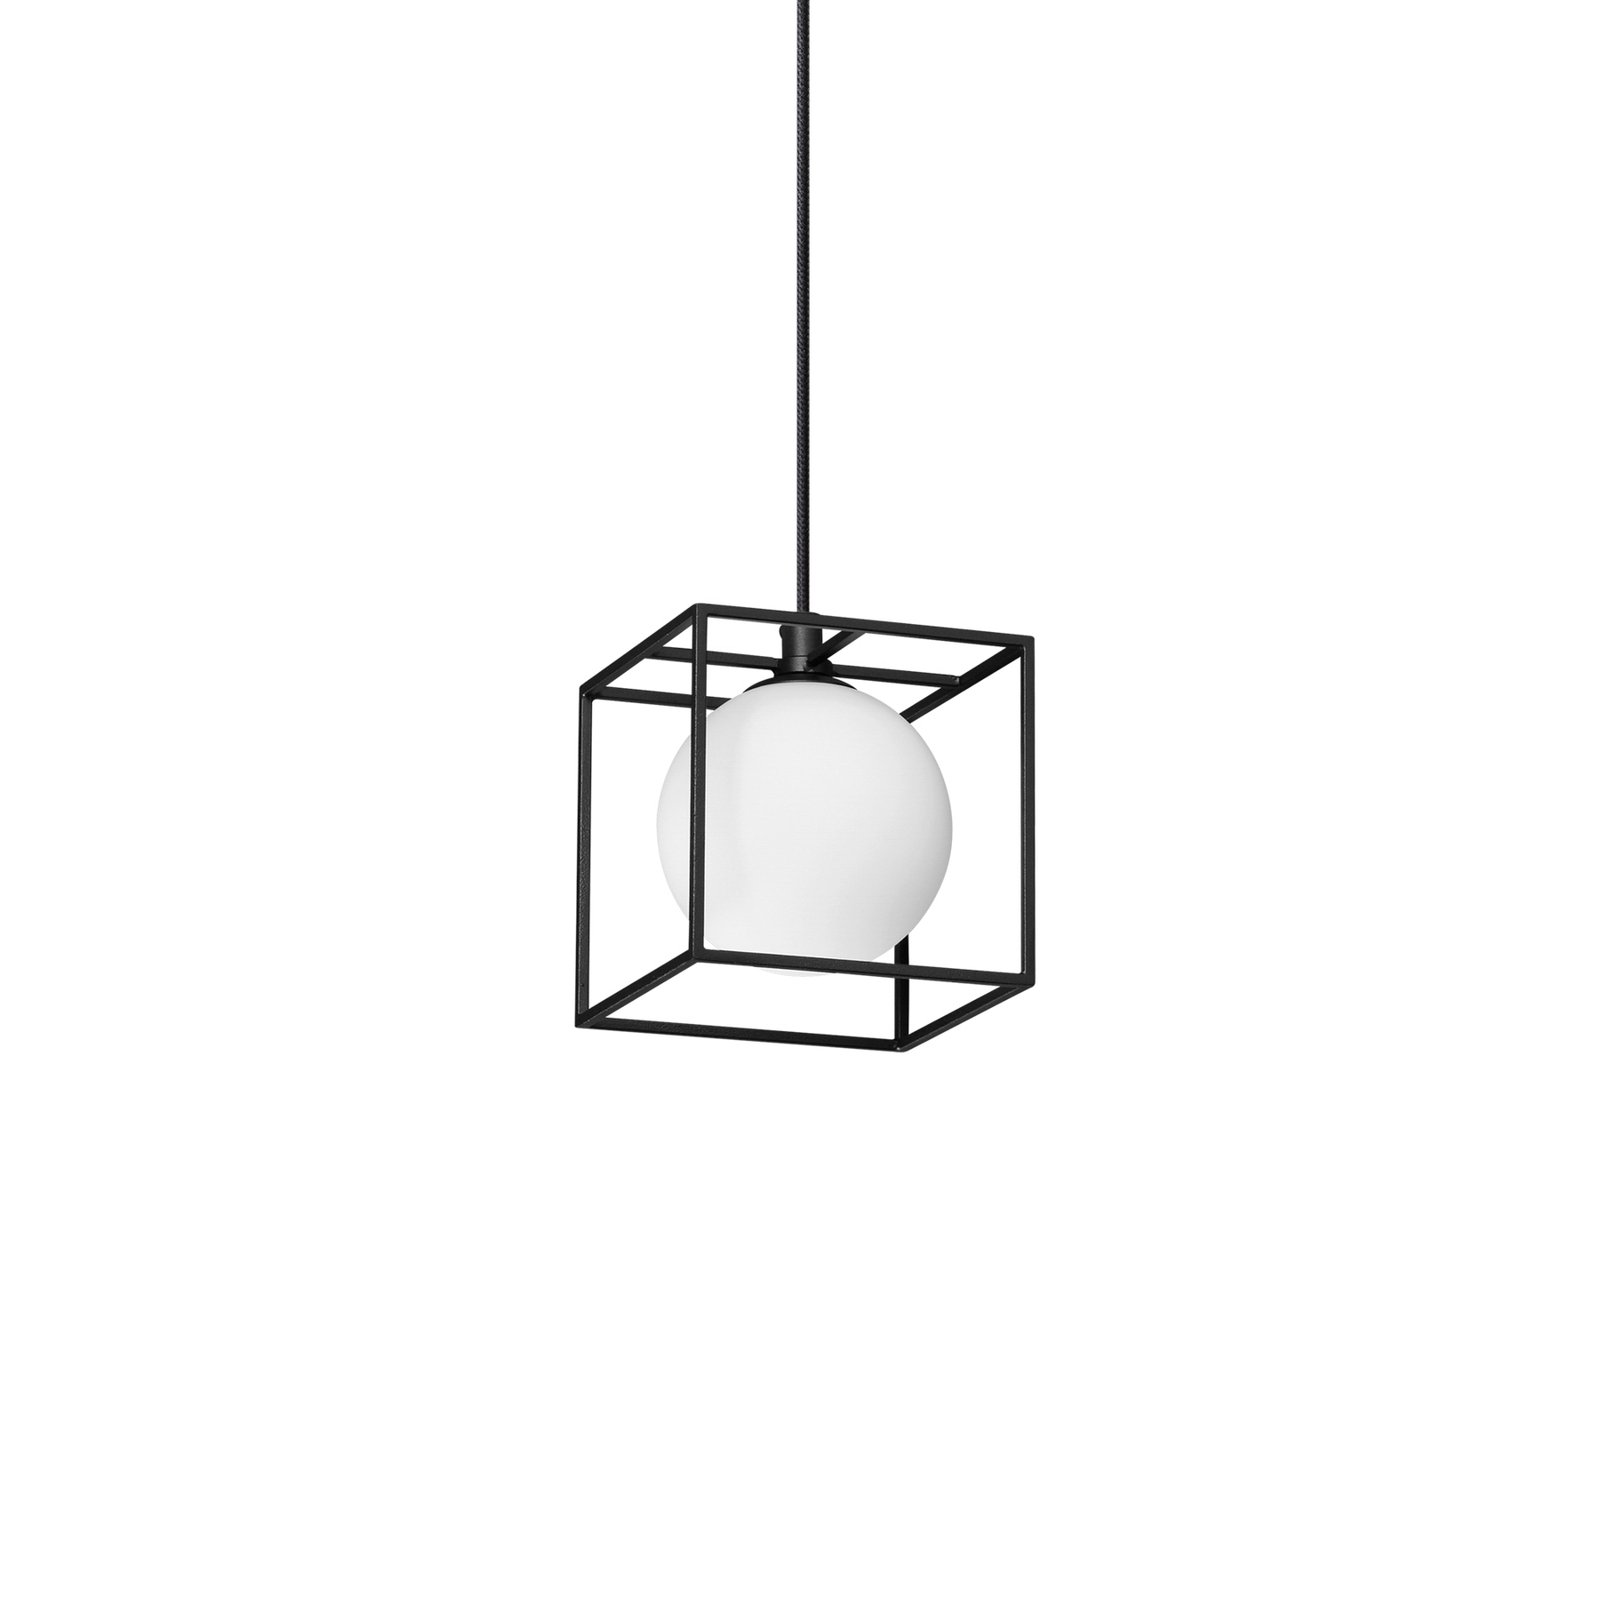 Viseća lampa Ideal Lux Lingotto, jedna žarulja, crna, opalno staklo